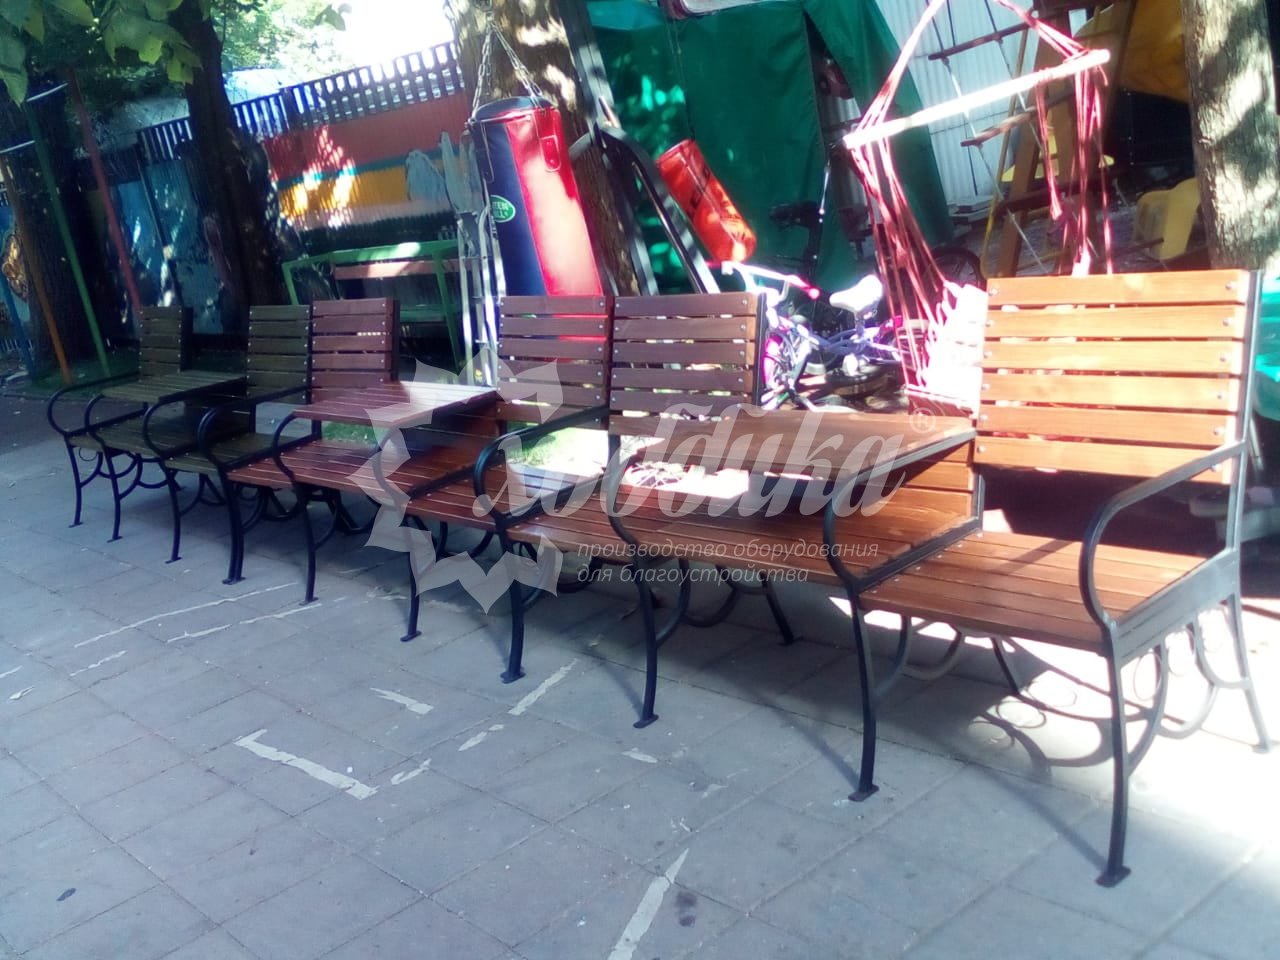 Начинаем лето с Хоббикой: скамейки в городе и на дачах Подмосковья - 121